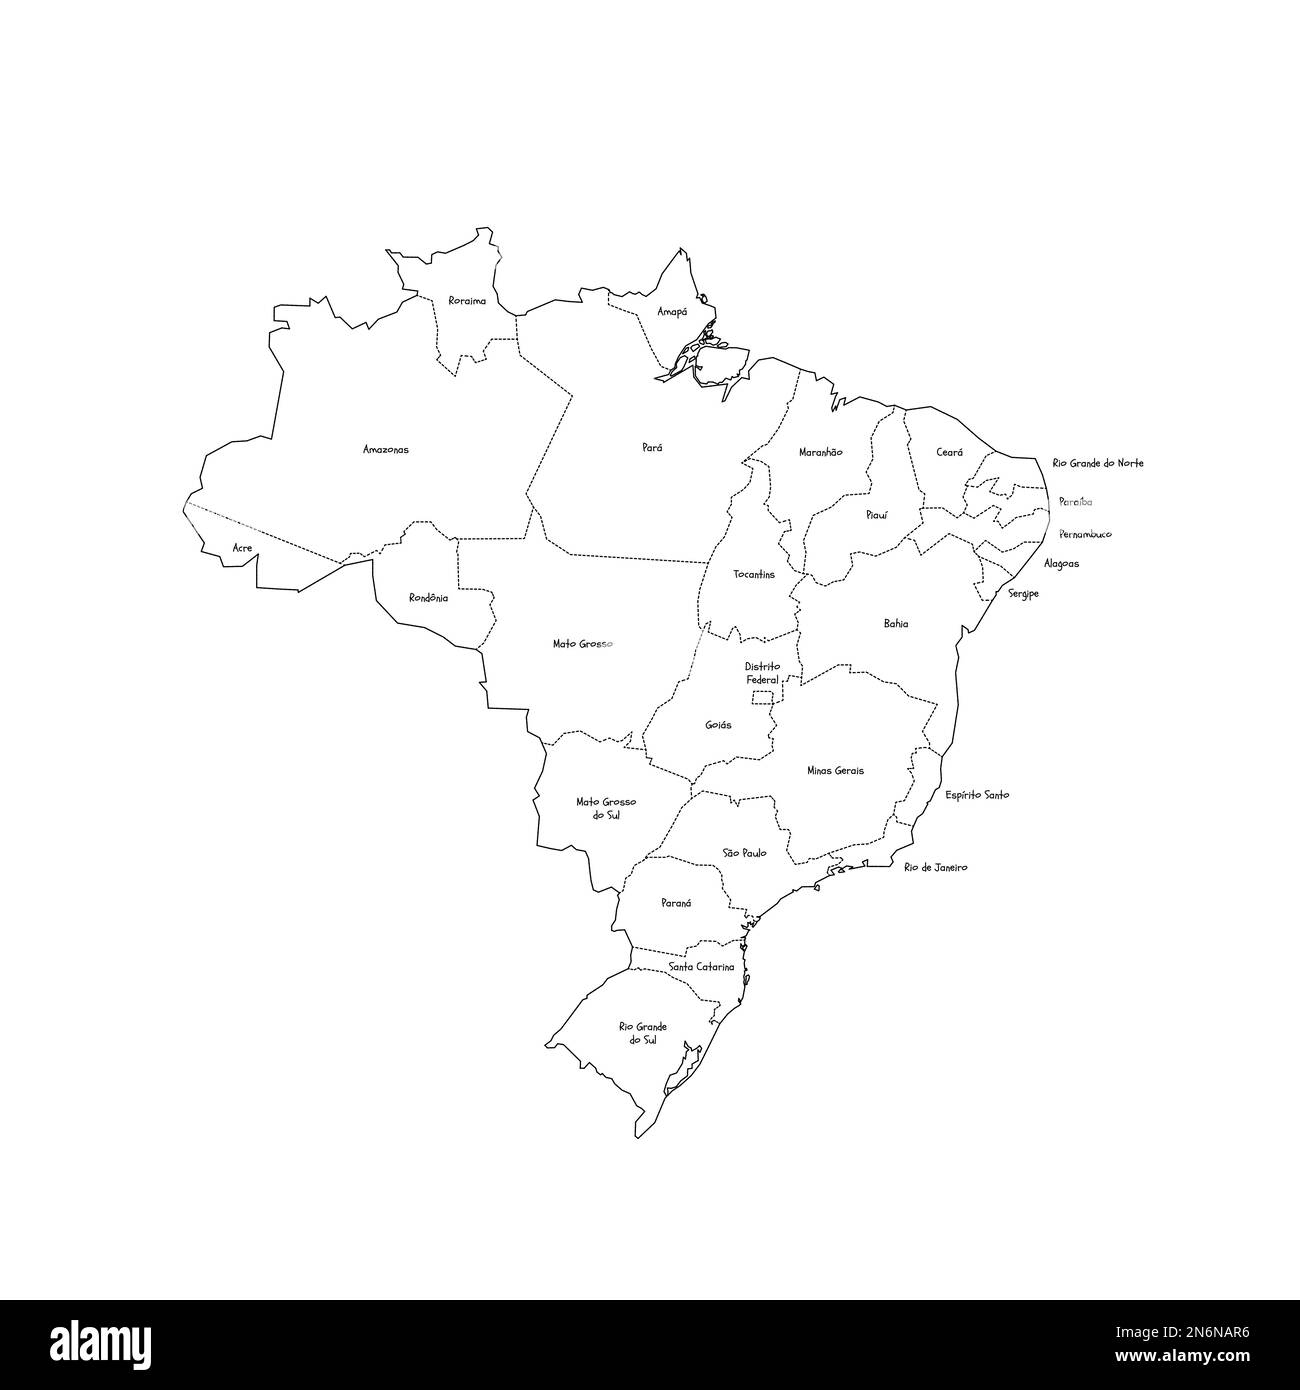 Politische Karte Brasiliens der Verwaltungsabteilungen - Föderative Einheiten Brasiliens. Handgezeichnete Karte im Kritzelstil mit schwarzen Umrandungen und Namensschildern. Stock Vektor